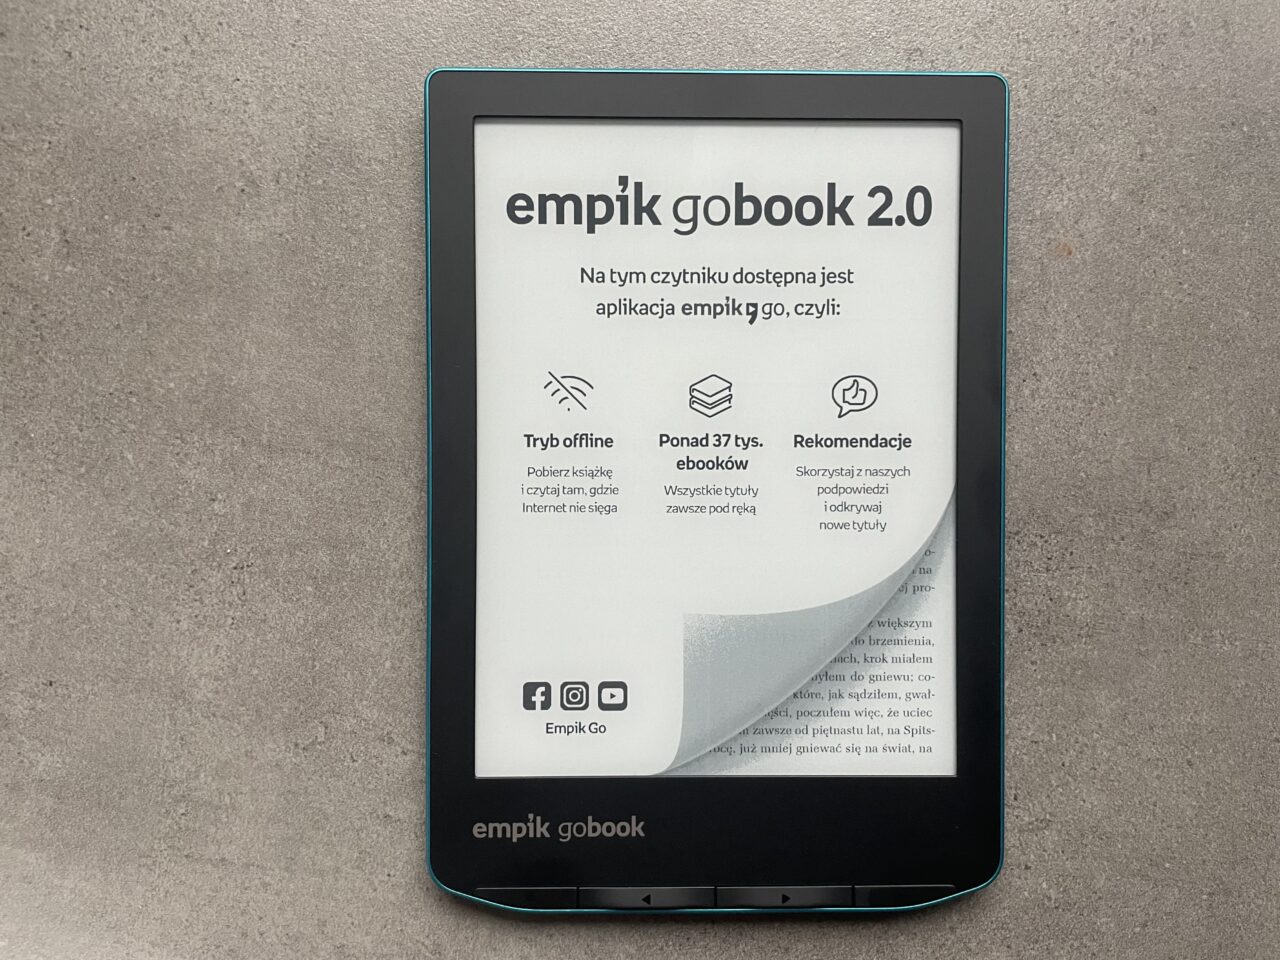 Czytnik e-booków Empik GoBook 2.0 leżący na szarym tle, z wyświetlonym ekranem głównym, na którym widnieje informacja o dostępnej aplikacji Empik Go.